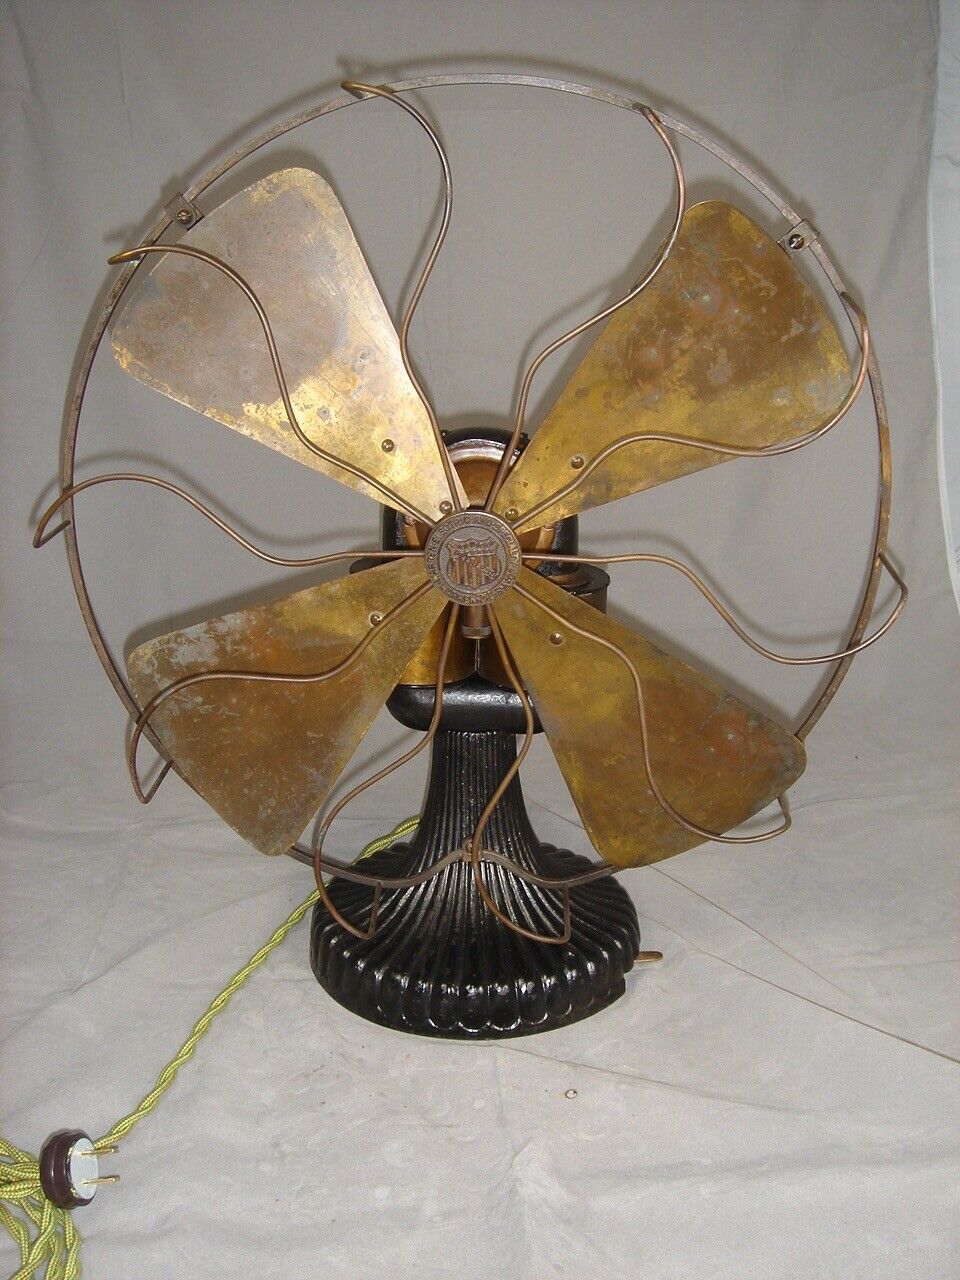 Circa 1897  16” Peerless Bipolar Fan  Runs Great. Rare Fan.